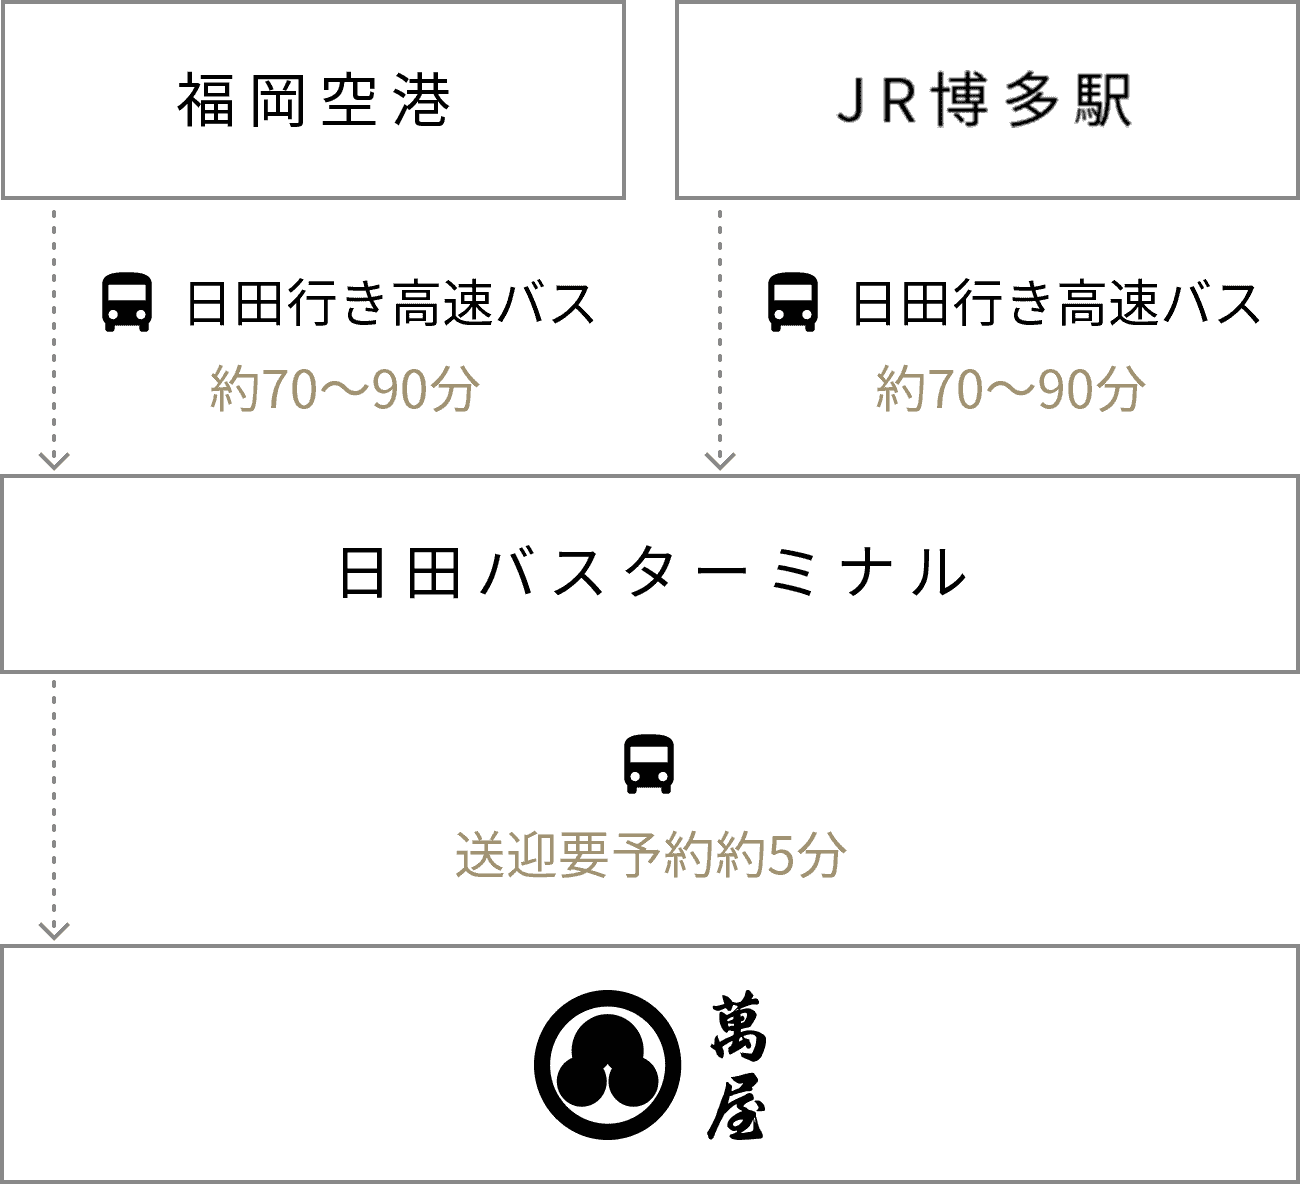 福岡空港や博多駅よりバスを利用